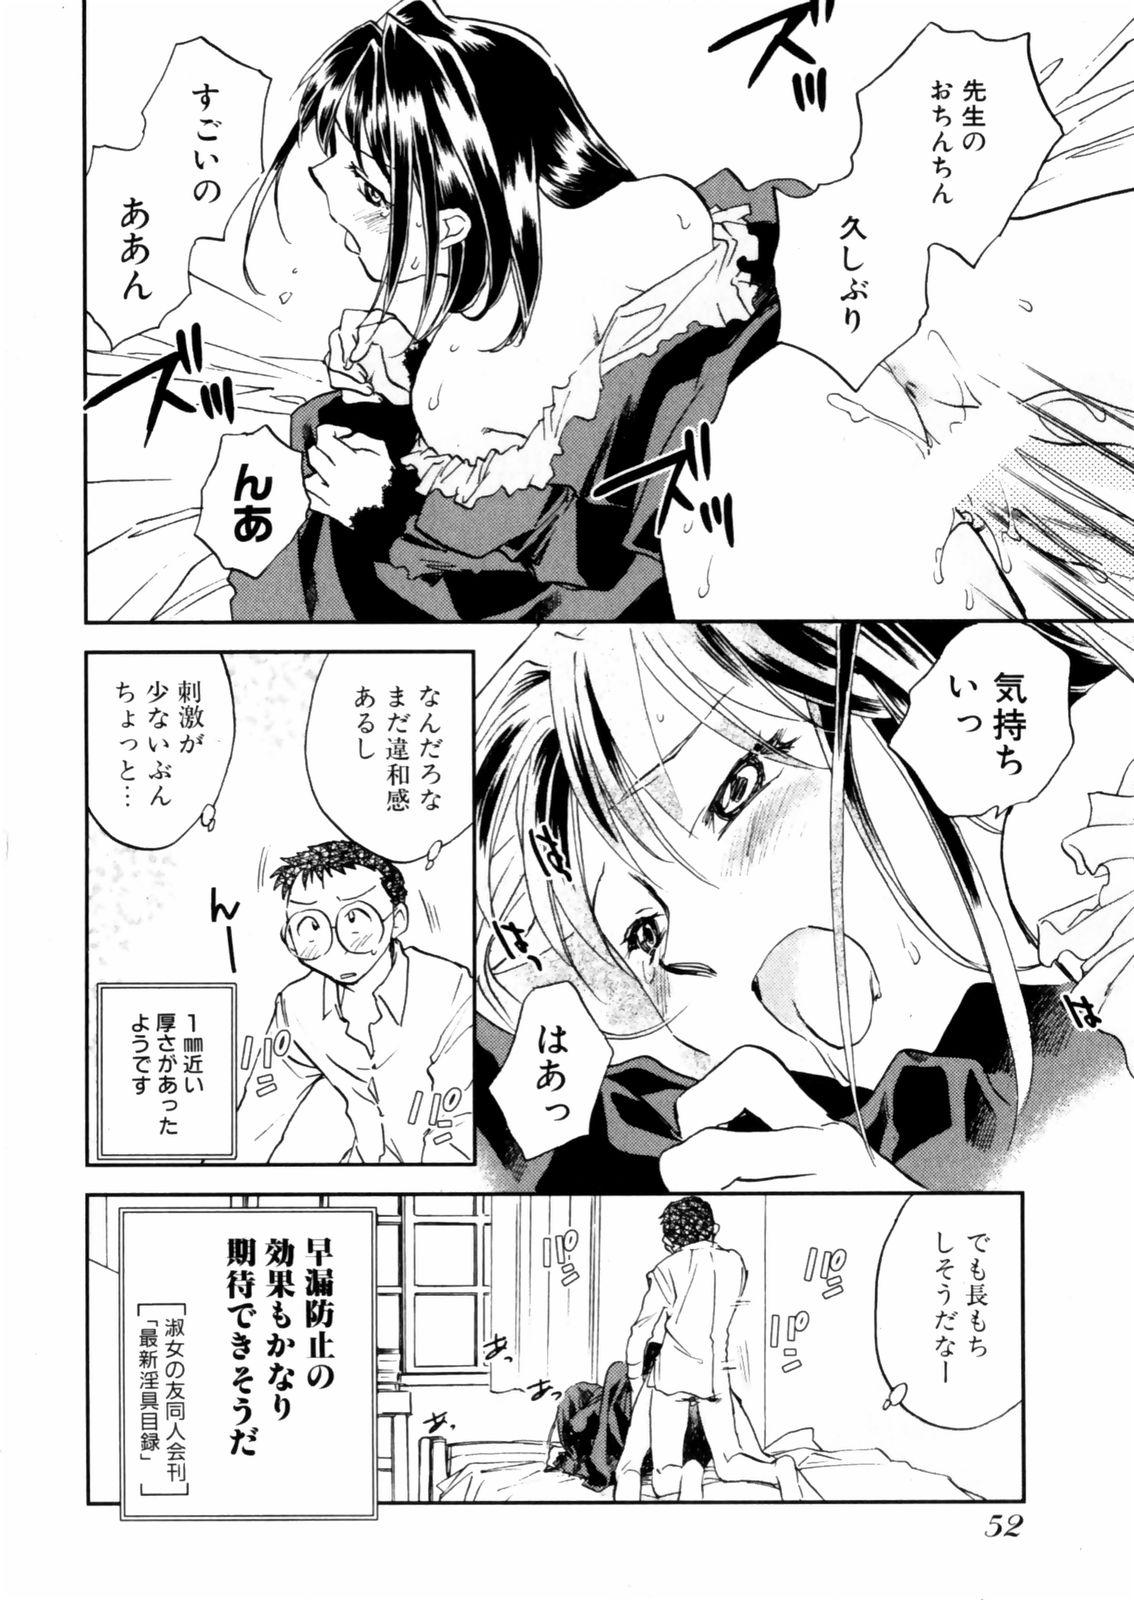 [Okano Ahiru] Hanasake ! Otome Juku (Otome Private Tutoring School) Vol.2 53